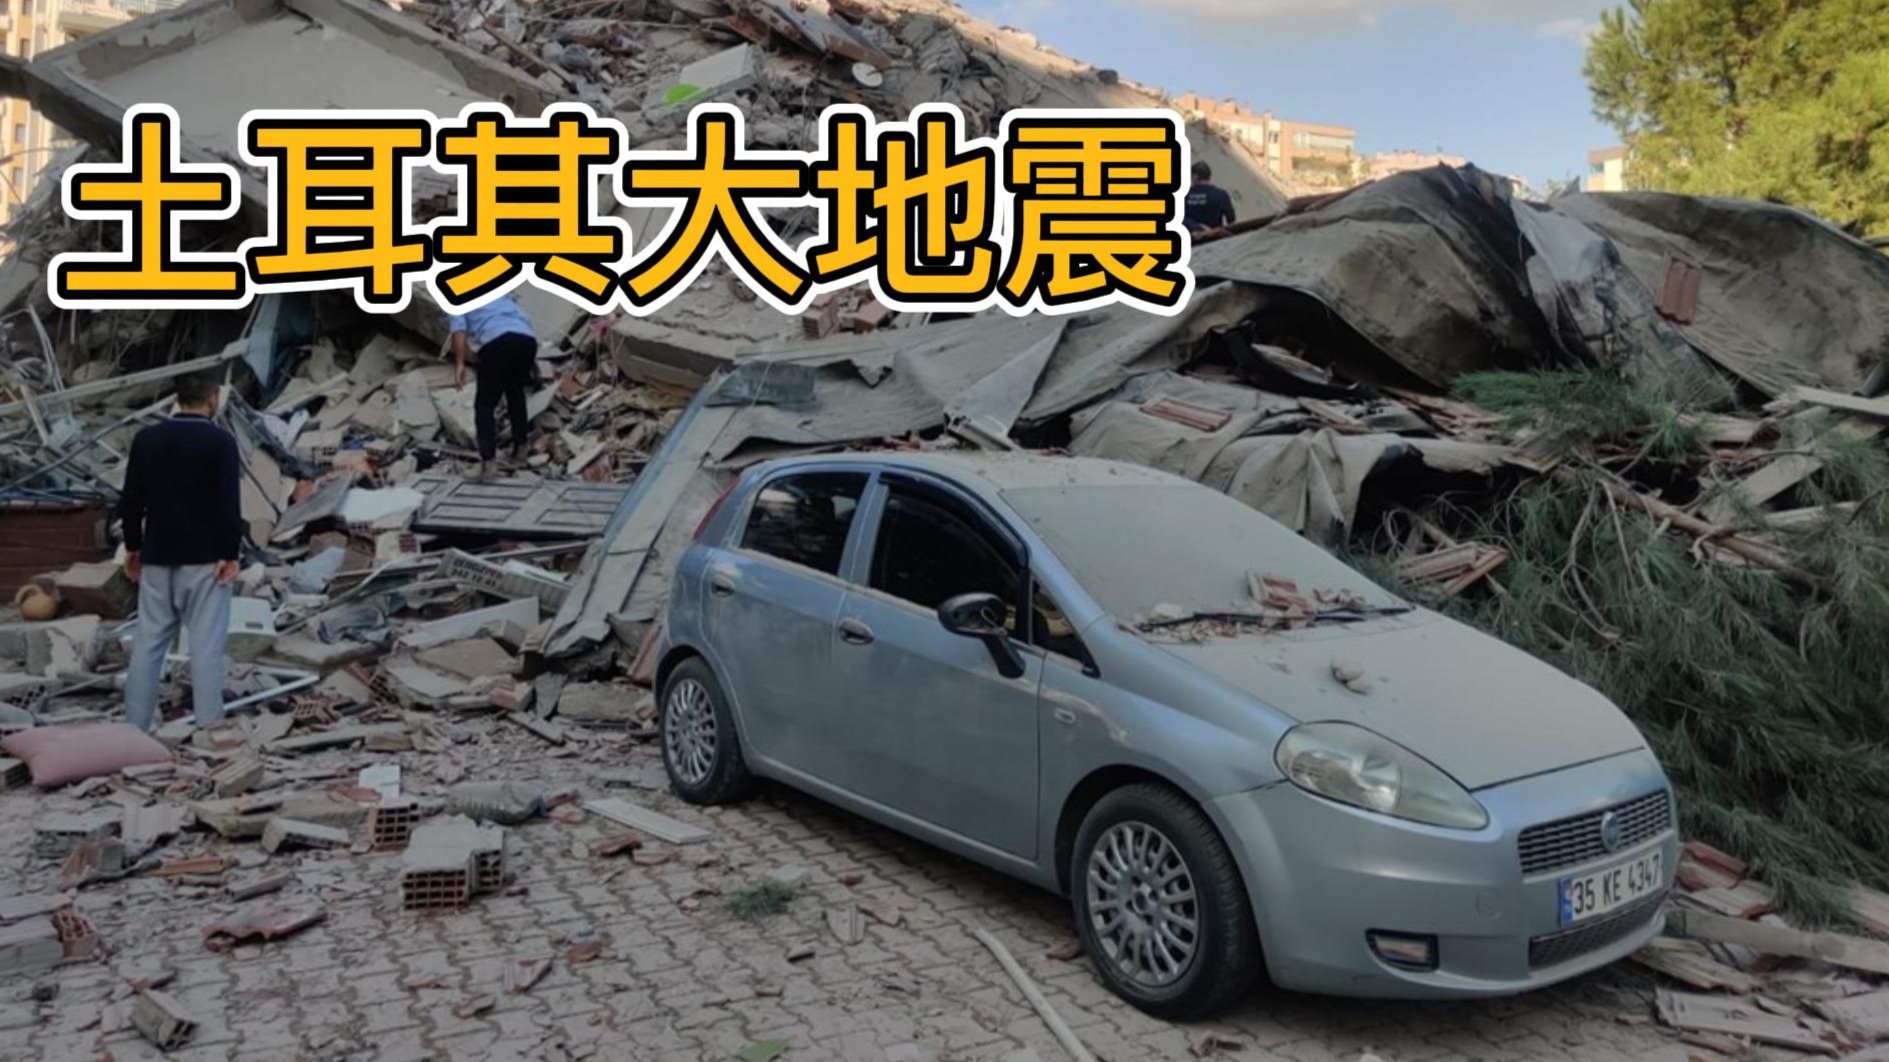 云南 青海等地发生地震 抢险救援抓紧进行——中原网